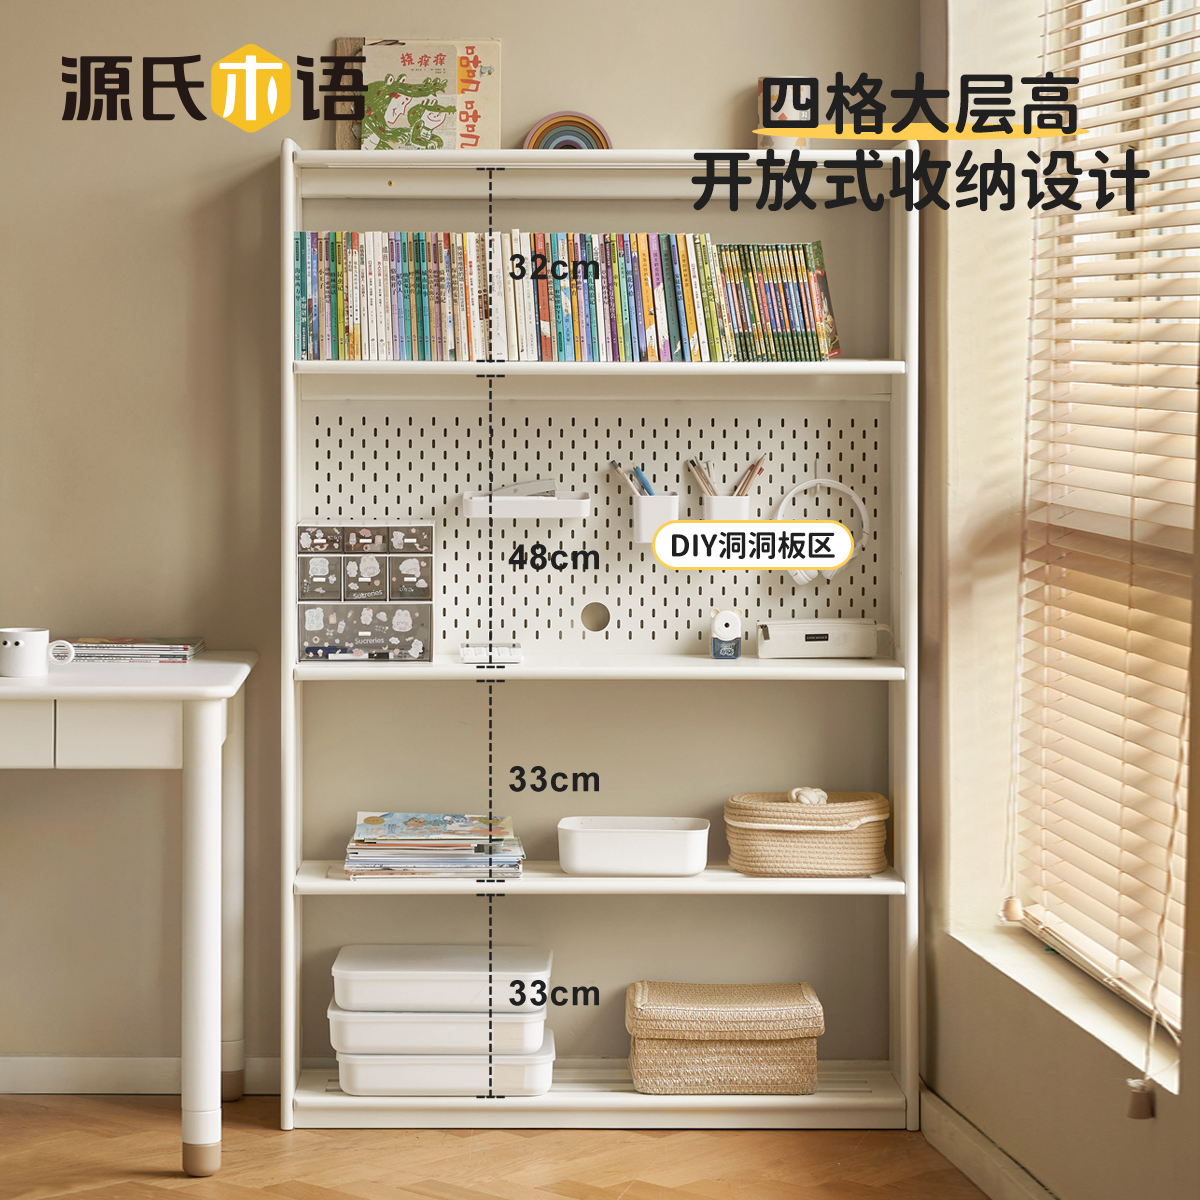 新客减源氏木语儿童实木书柜家用组合桌柜白色书架学生阅读绘本架